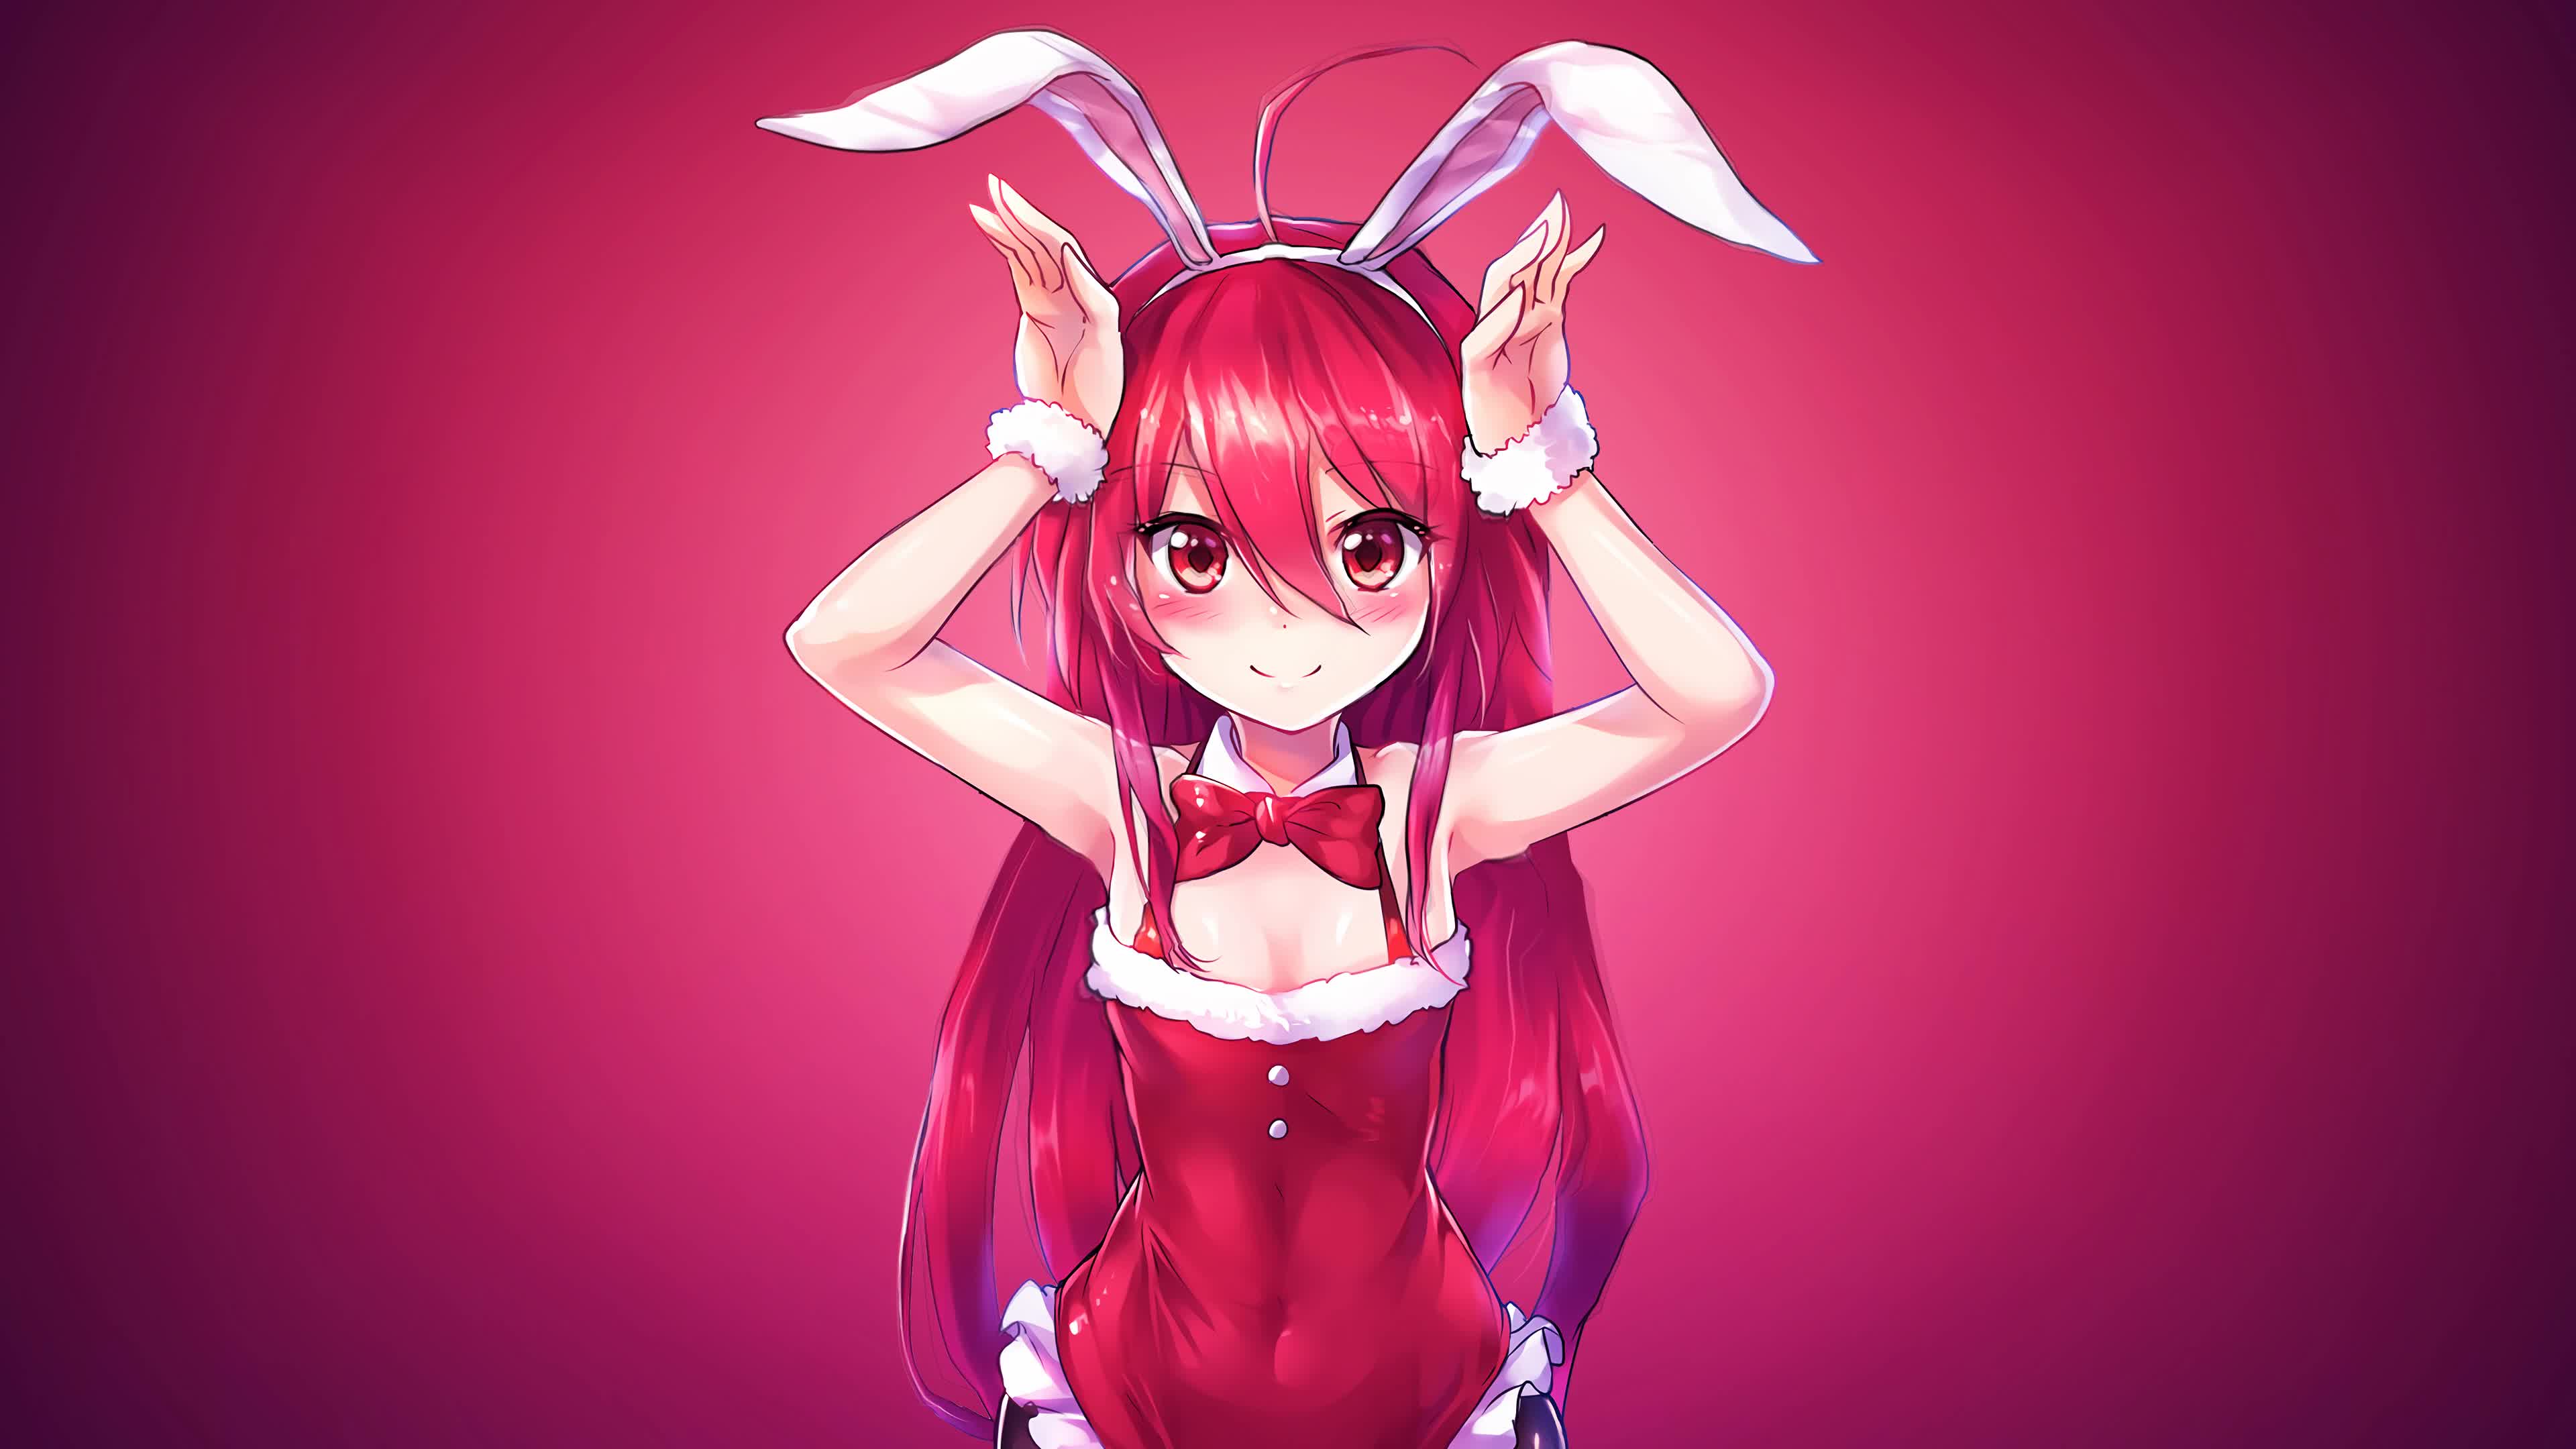 Anime Bunny Girl .desktophut.com